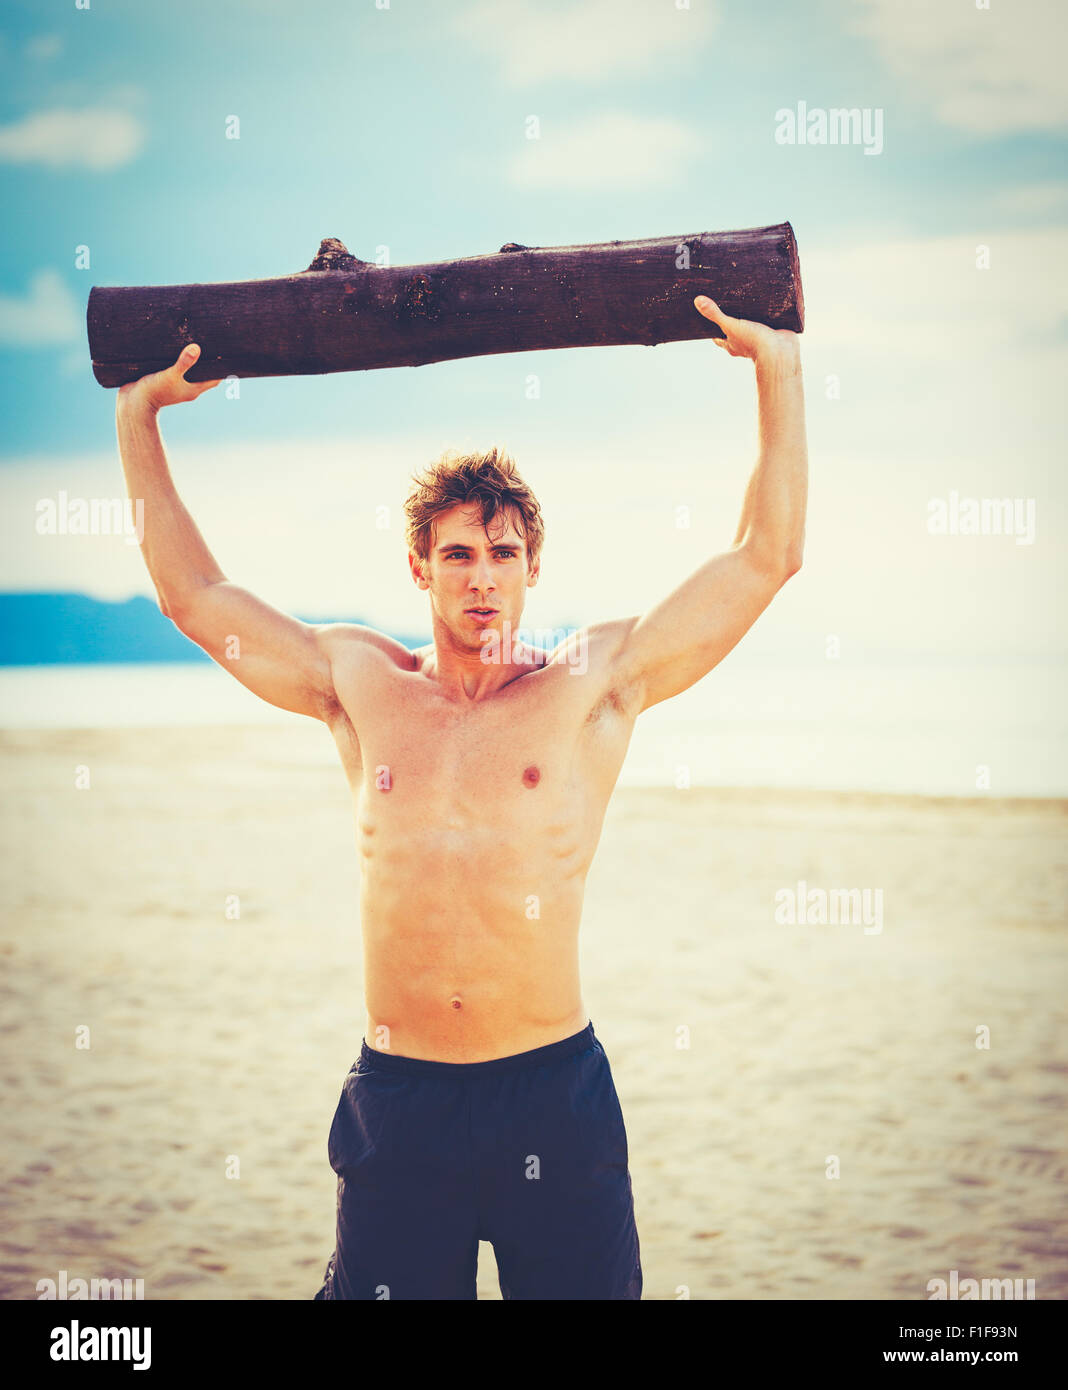 Plage de CrossFit entraînement. L'exercice de l'athlète masculin en plein air sur la plage avec tree log. Condition physique et mode de vie sain. Banque D'Images